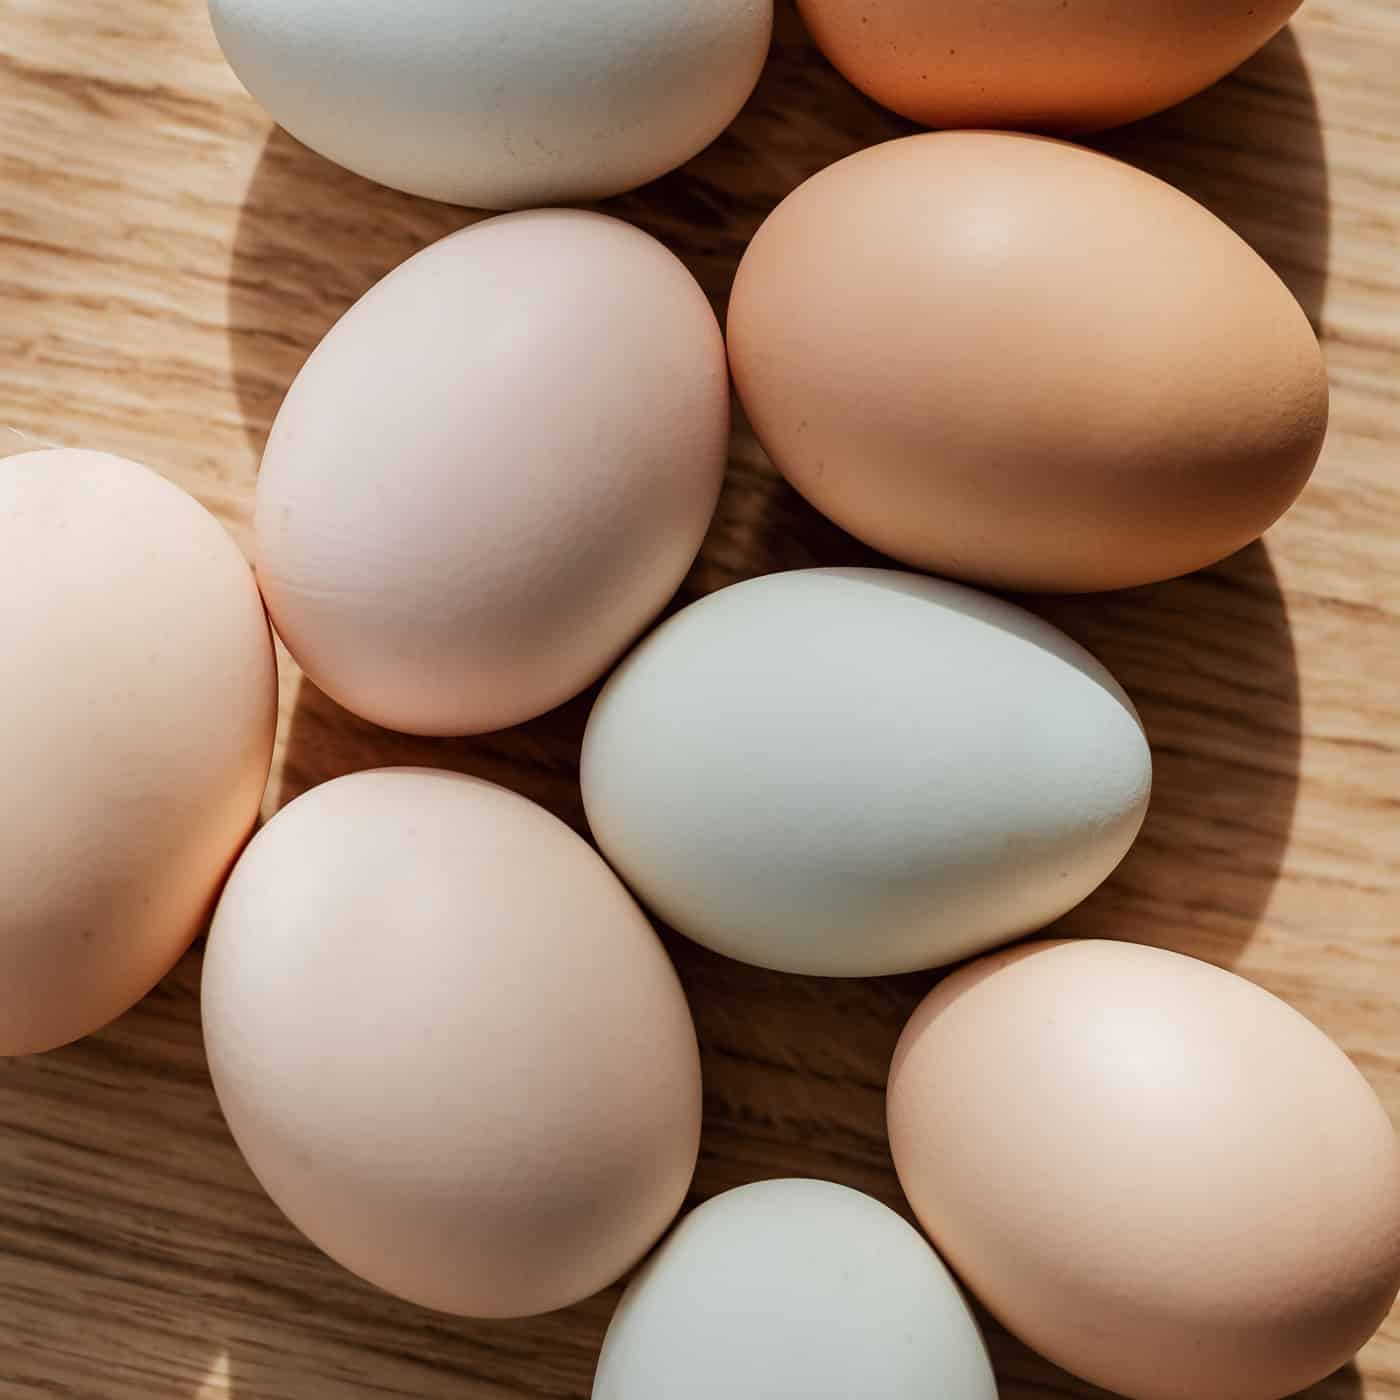 elke dag tactiek winkelwagen Het verschil tussen witte en bruine eieren - Basis.fit